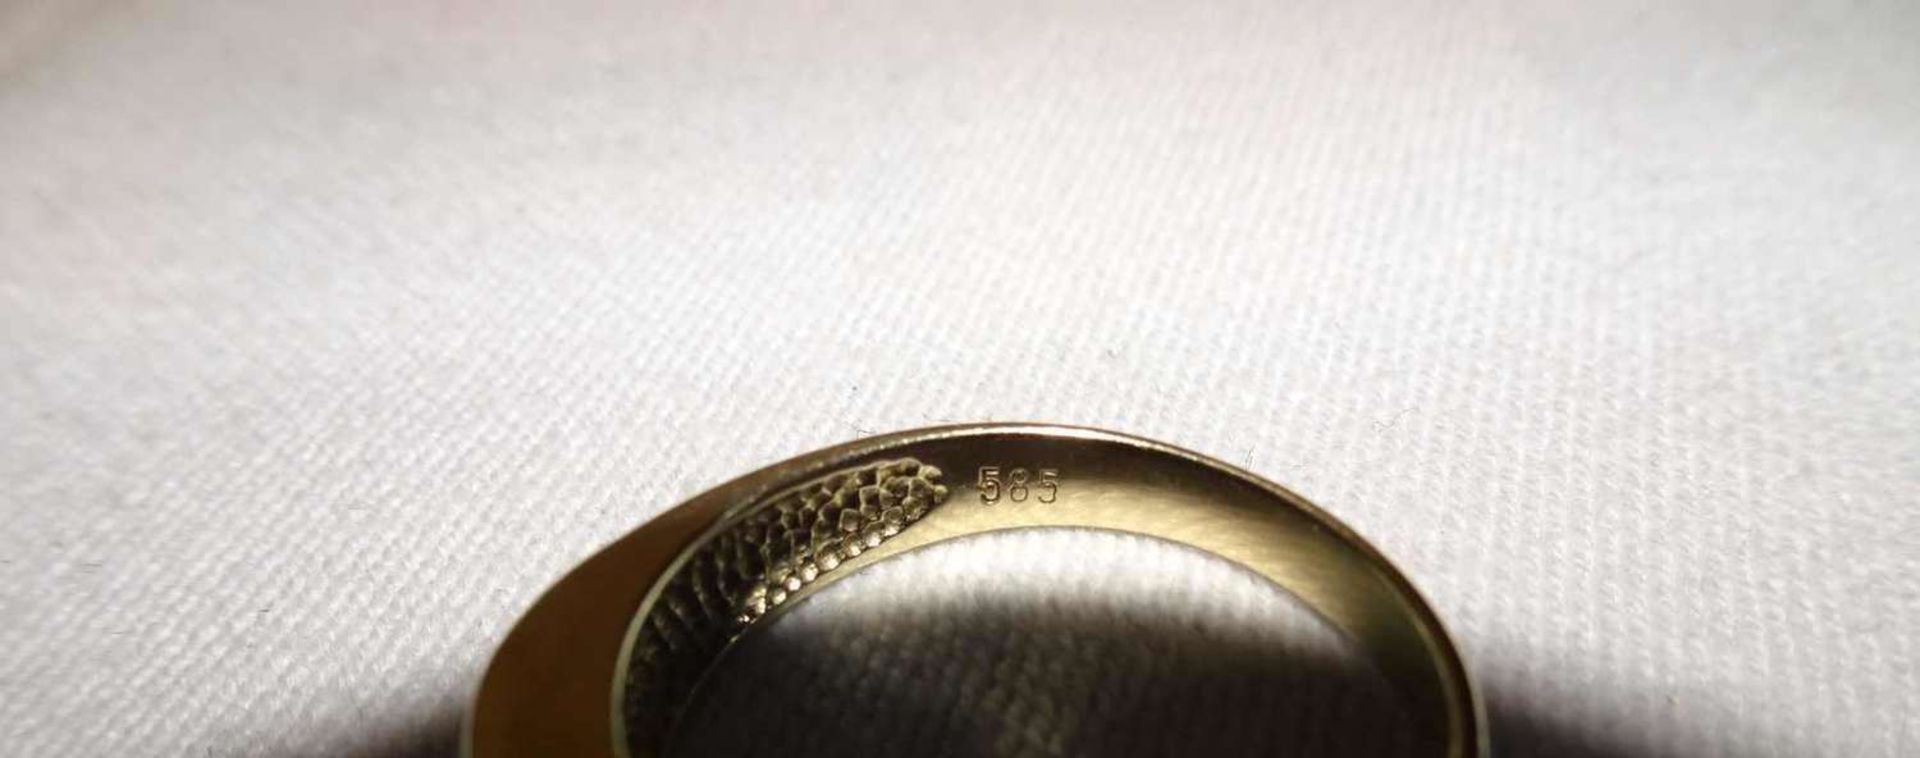 Damenring, 585er Gelbgold, besetzt mit verschiedenen Edelsteinen. Ringgröße 56. Gewicht ca. 3,4 g - Bild 3 aus 4